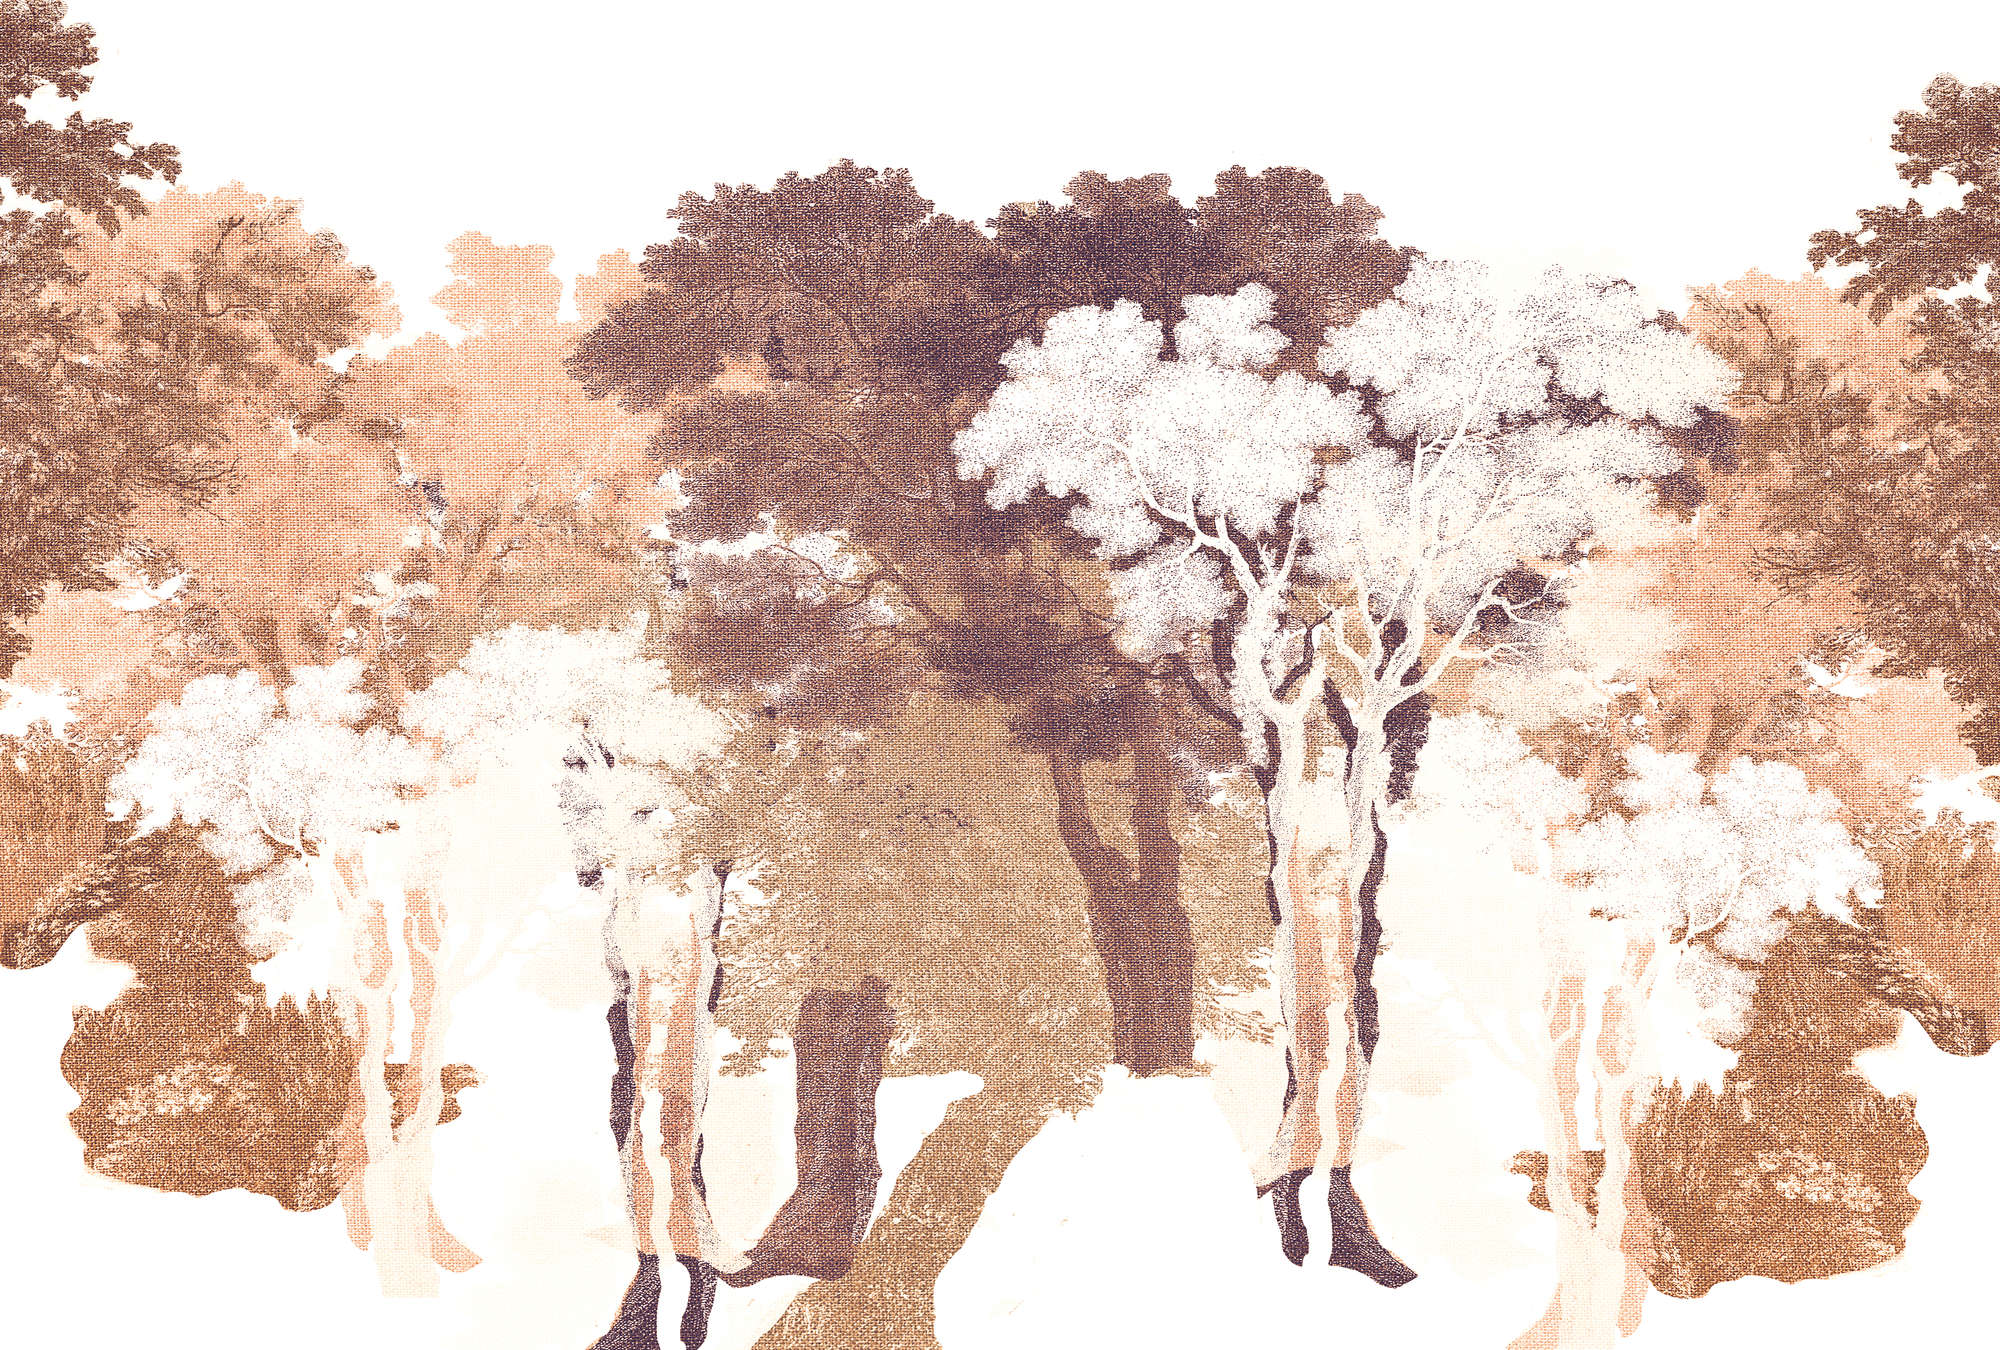             Fototapete Bäume, Textil-Look & Waldlandschaft – Orange, Weiß, Grau
        